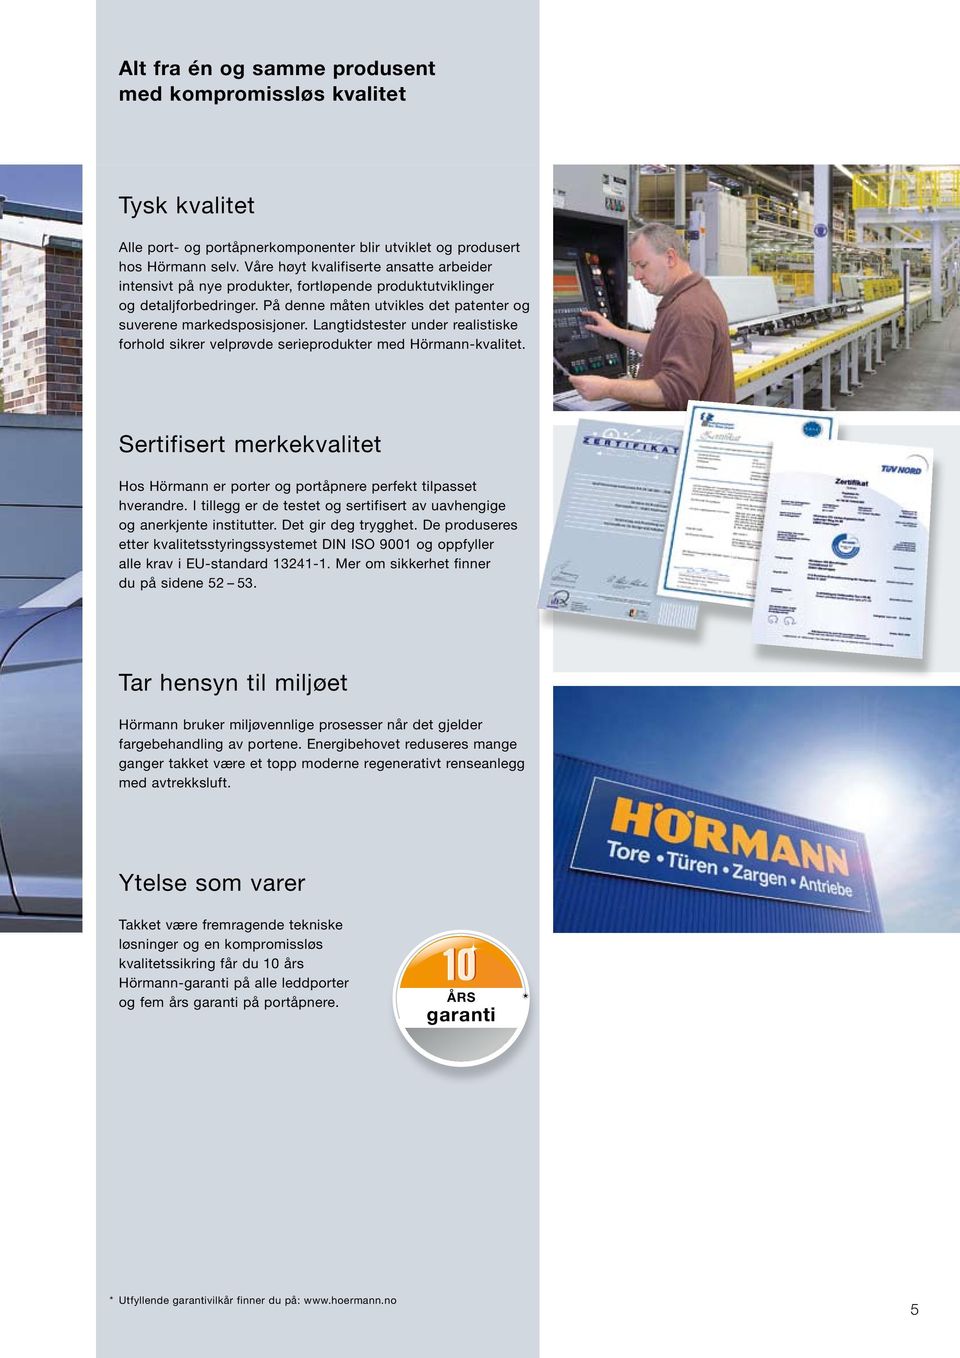 Langtidstester under realistiske forhold sikrer velprøvde serieprodukter med Hörmann-kvalitet. Sertifisert merkekvalitet Hos Hörmann er porter og portåpnere perfekt tilpasset hverandre.